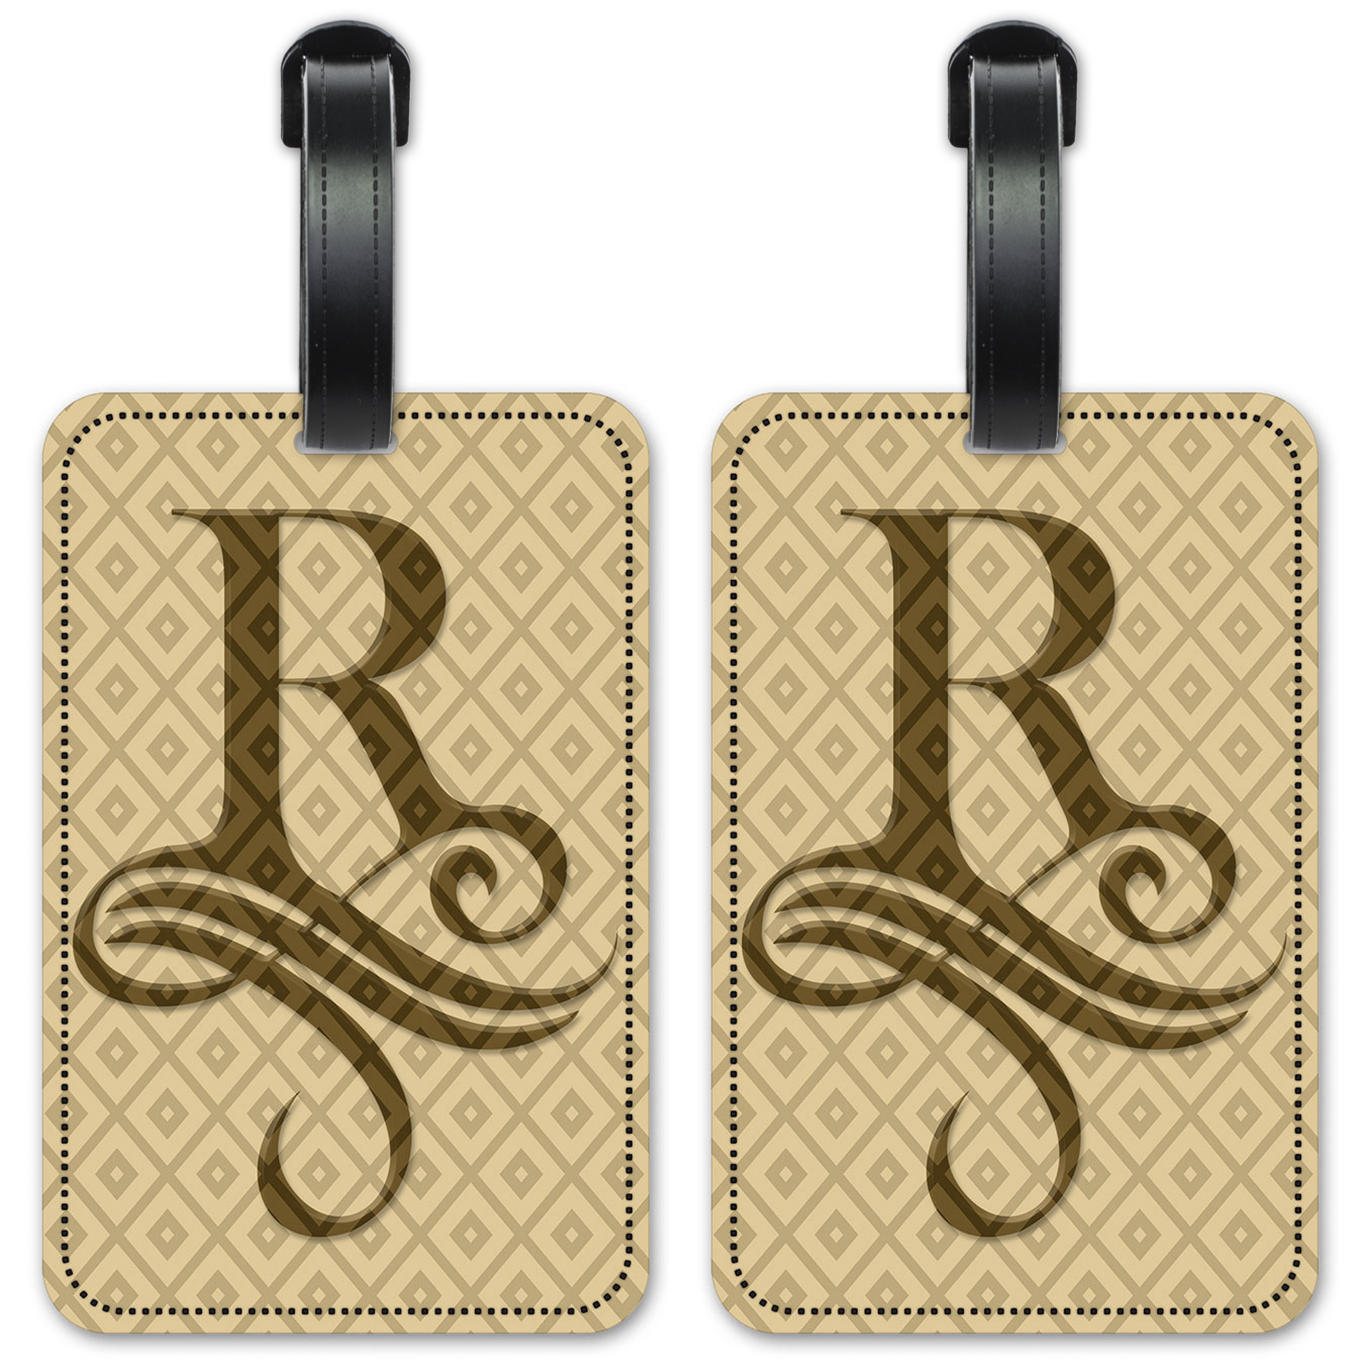 Letter "R" Monogram - #R